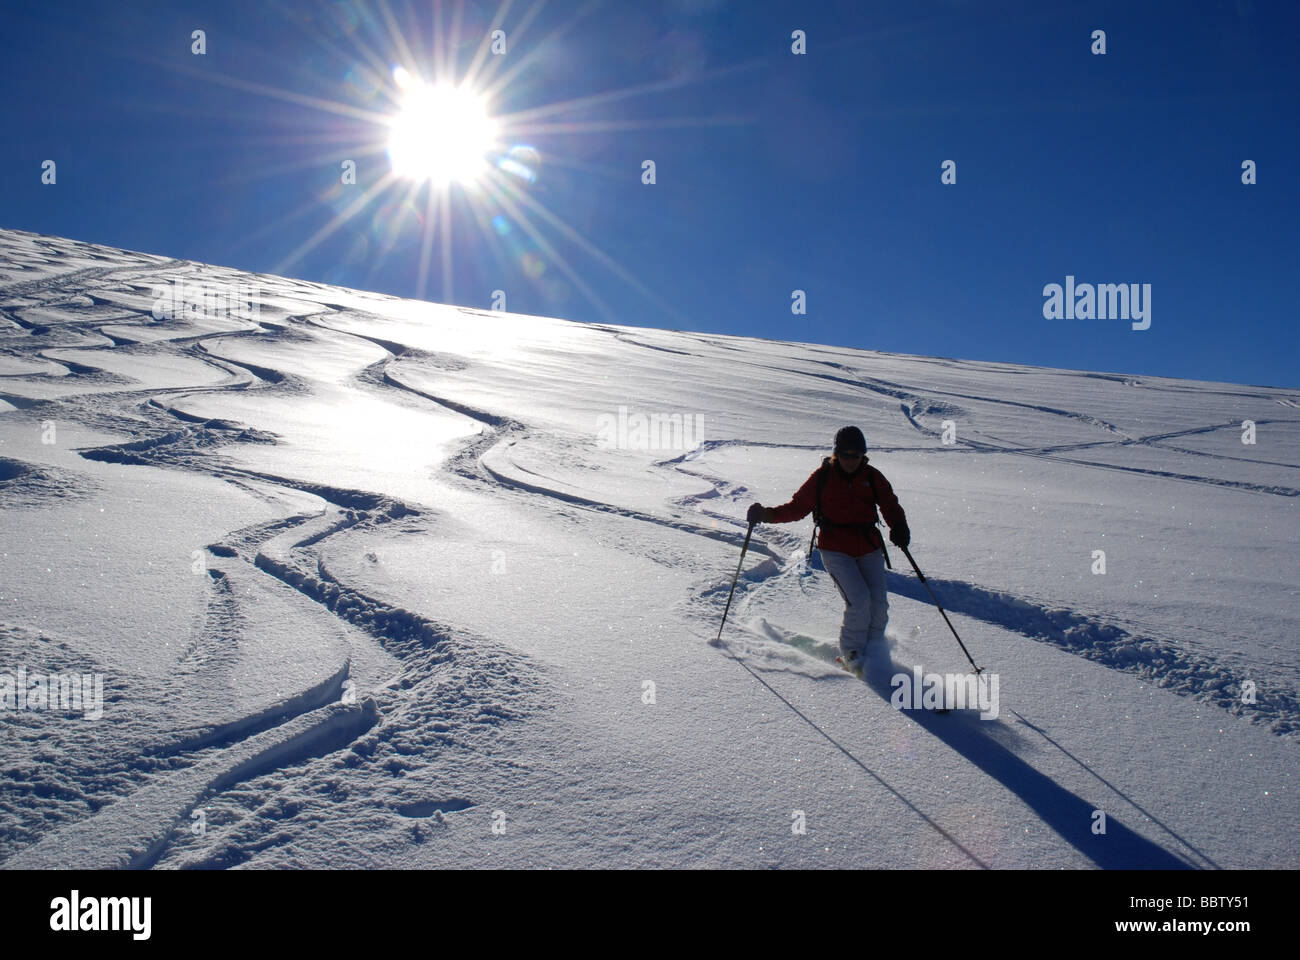 Skier freeriding powder snow, Bufaal, Swiss alps Stock Photo